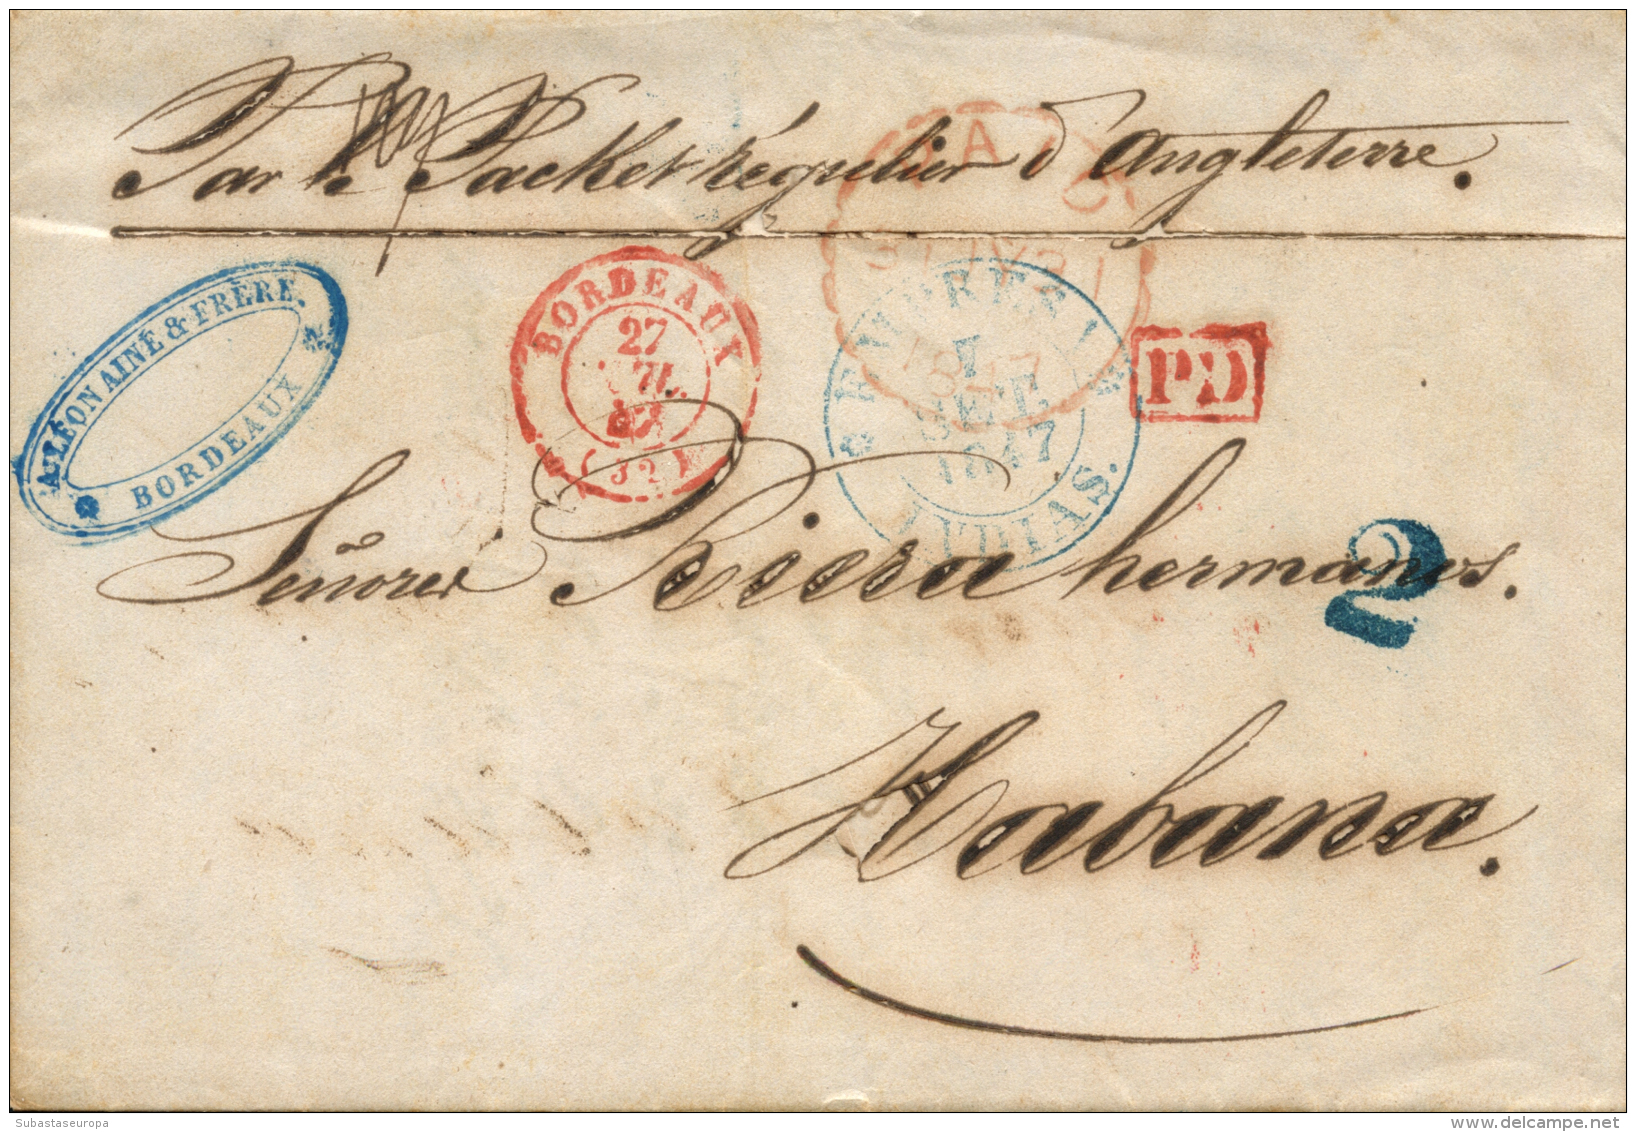 CUBA. 1845. Carta De Burdeos A La Habana. Marca "Empresa / Indias" En Azul (P.E. 57). Manuscrito "Par Le Packet... - Cuba (1874-1898)